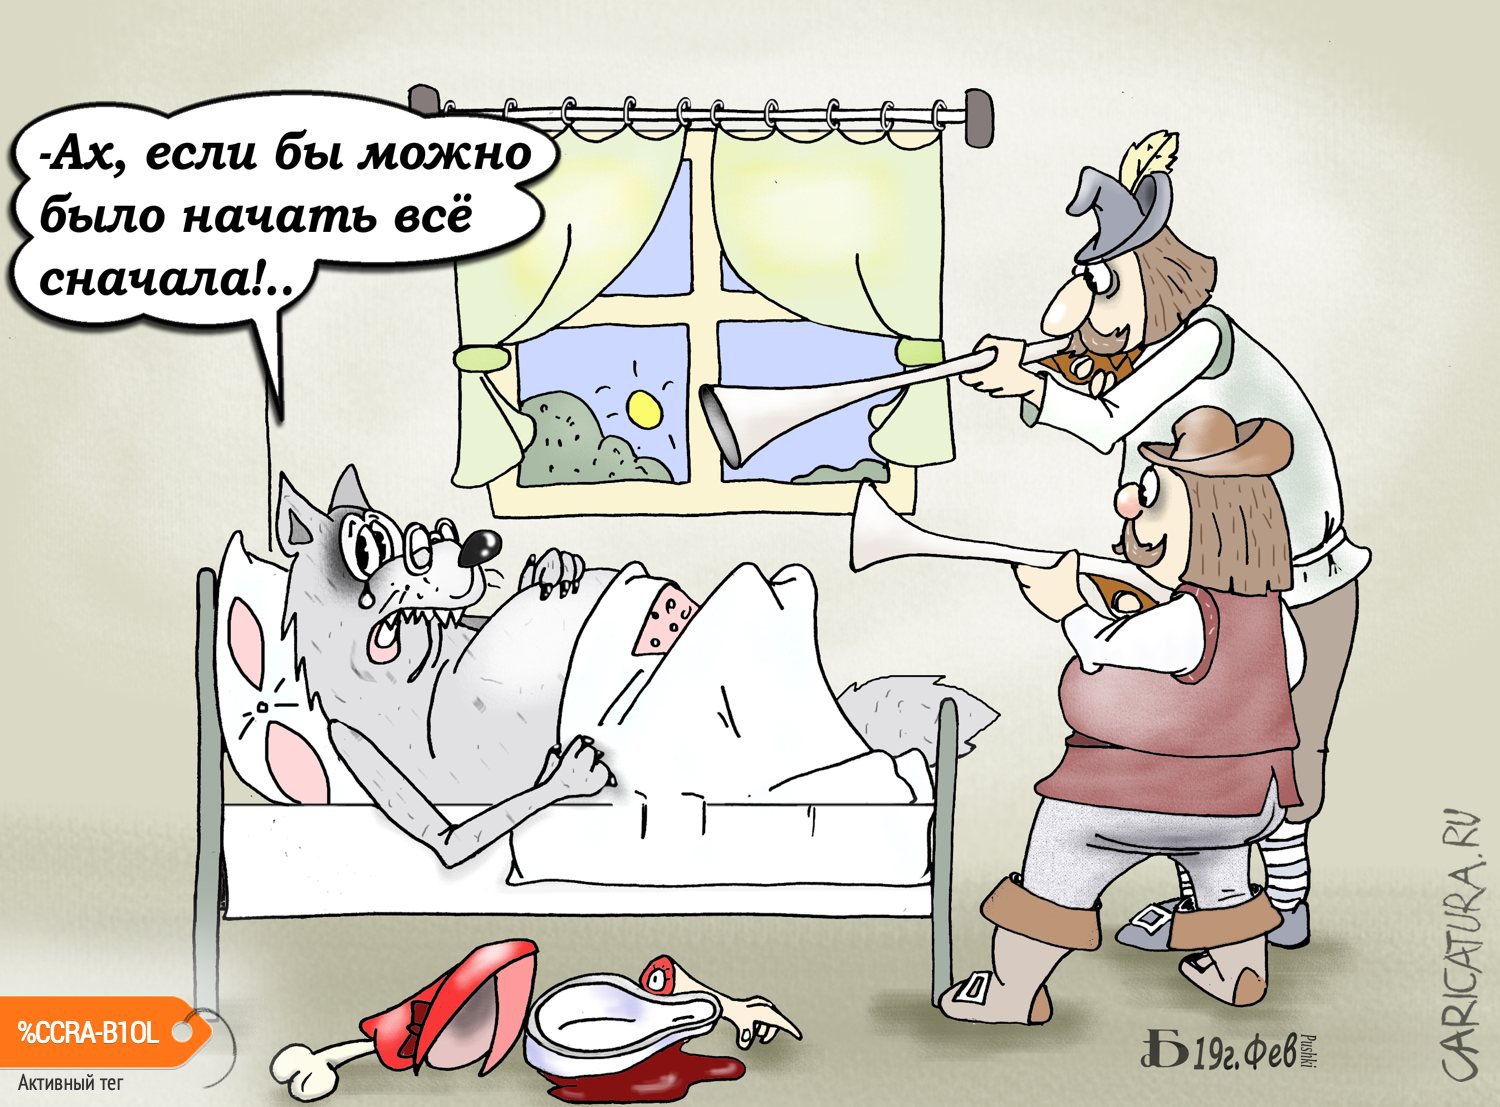 Карикатура "Про Волка и охотников", Борис Демин